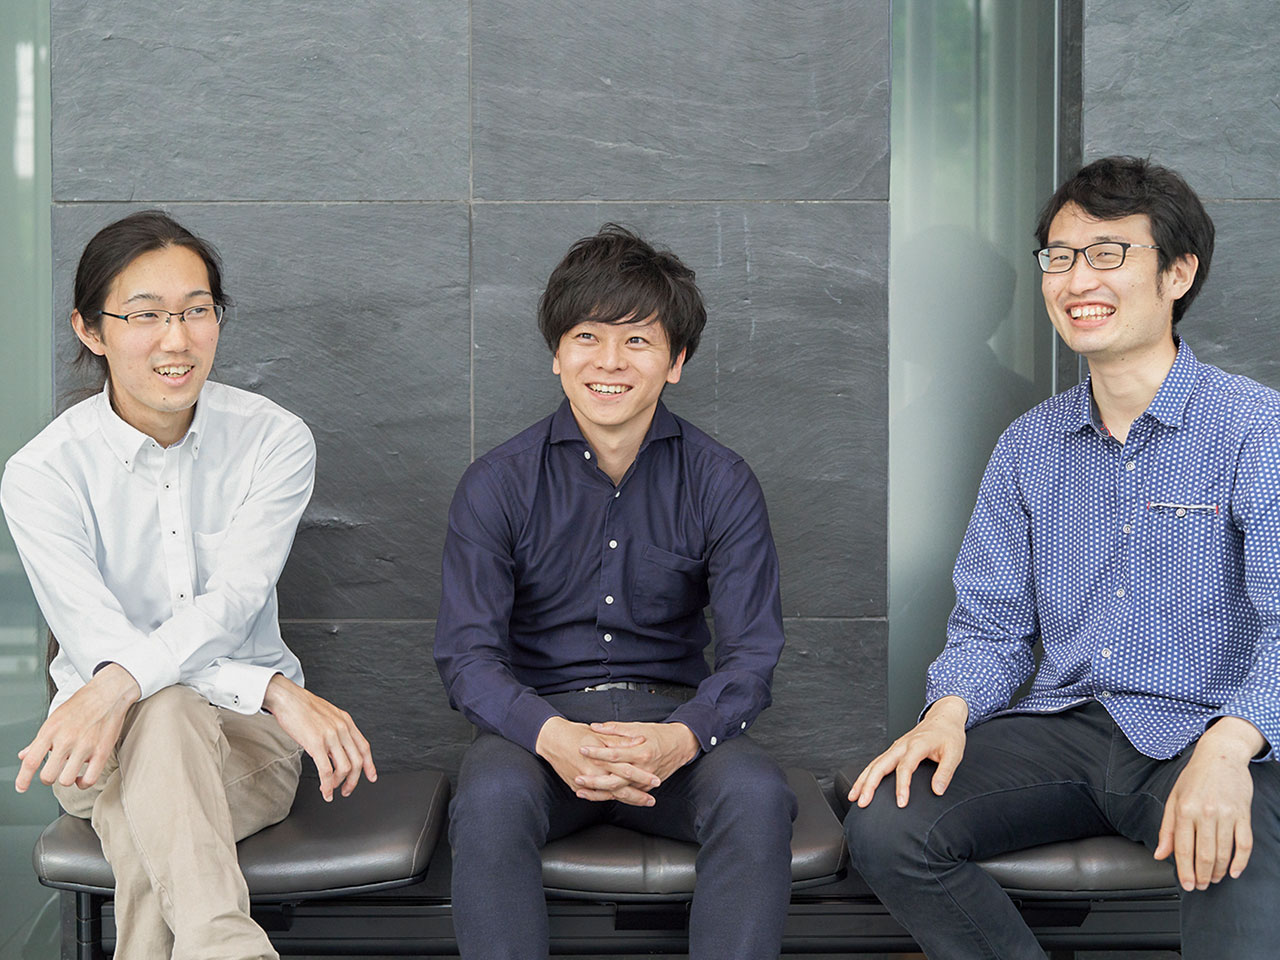 同社は、東京大学の研究室に在籍していたメンバーが2020年4月に設立したスタートアップ企業である。